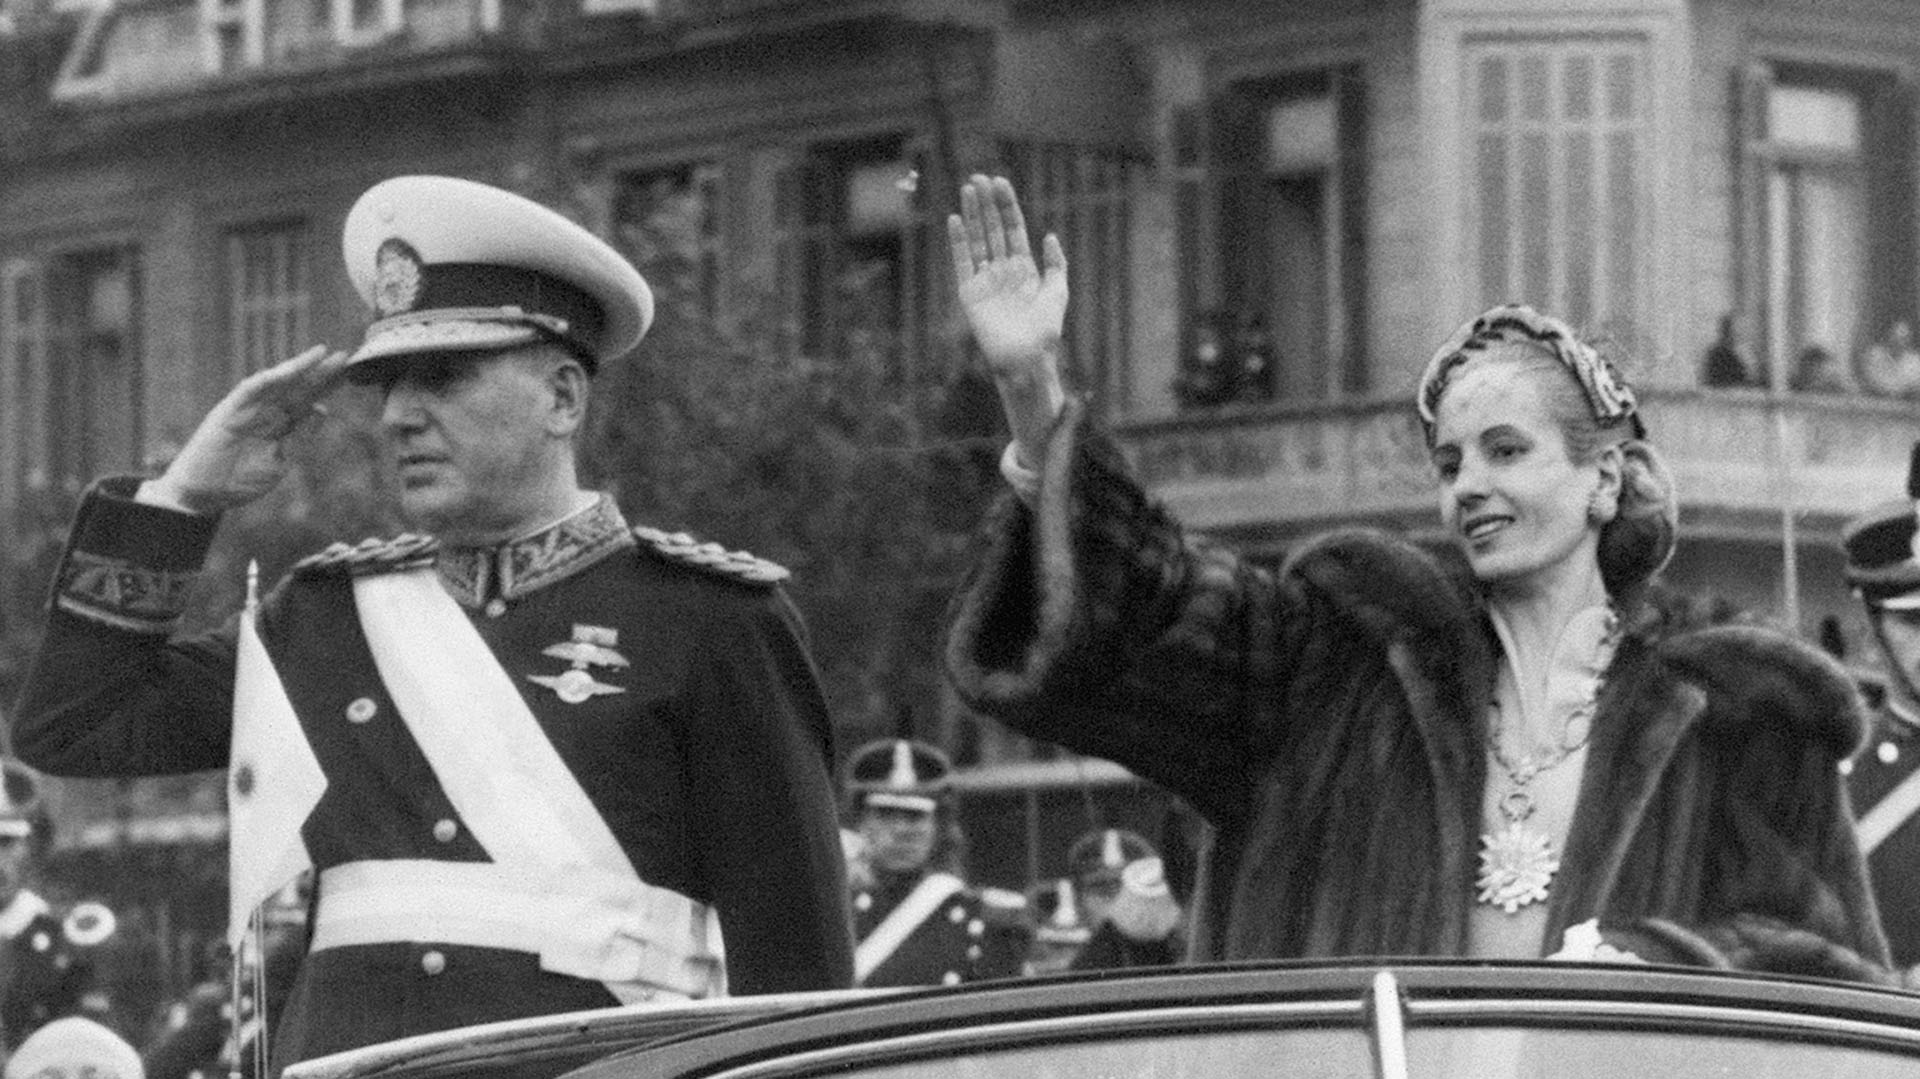 El 4 de junio de 1952, Eva Perón fue vista por última vez durante las ceremonias de la segunda asunción presidencial de Juan Domingo Perón. Ya muy enferma y sostenida por un corset, quiso estar junto a su esposo (Bettmann Archive)